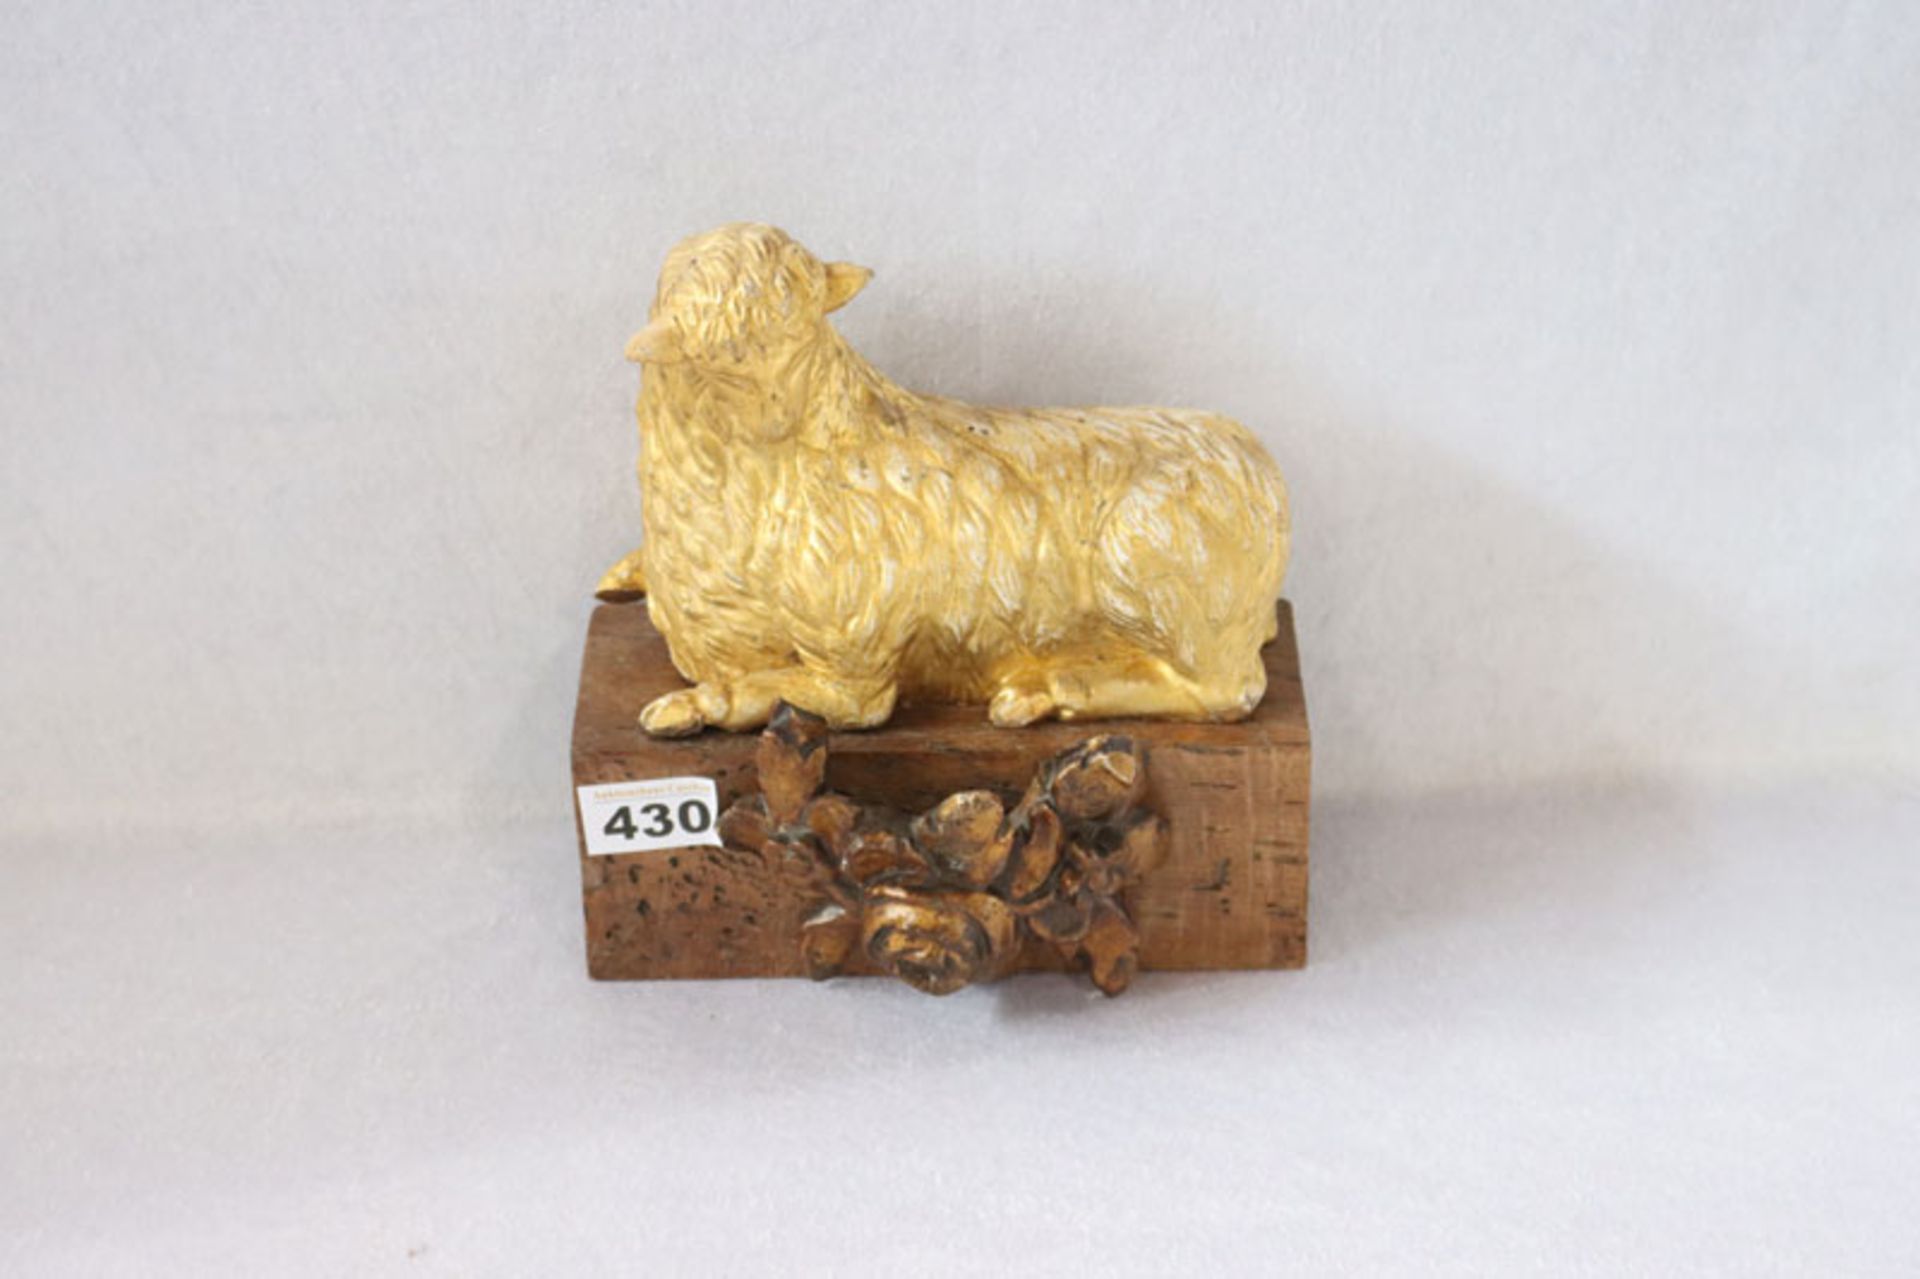 Holzskulptur 'Lamm Gottes', 19. Jahrhundert, gold gefaßt auf Holzsockel mit Blumendrelief, teils